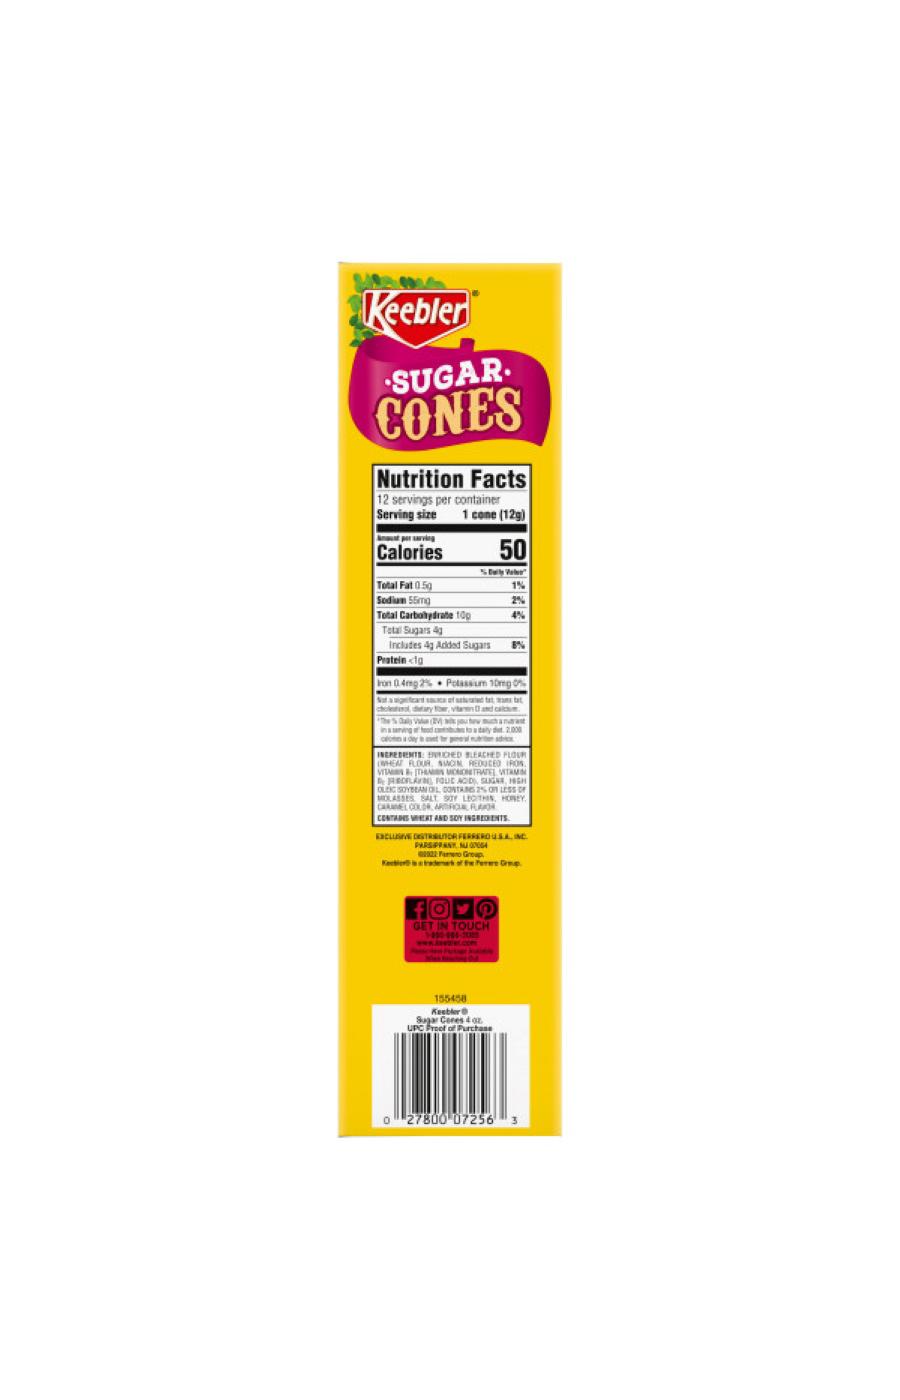 Keebler Sugar Cones; image 3 of 5